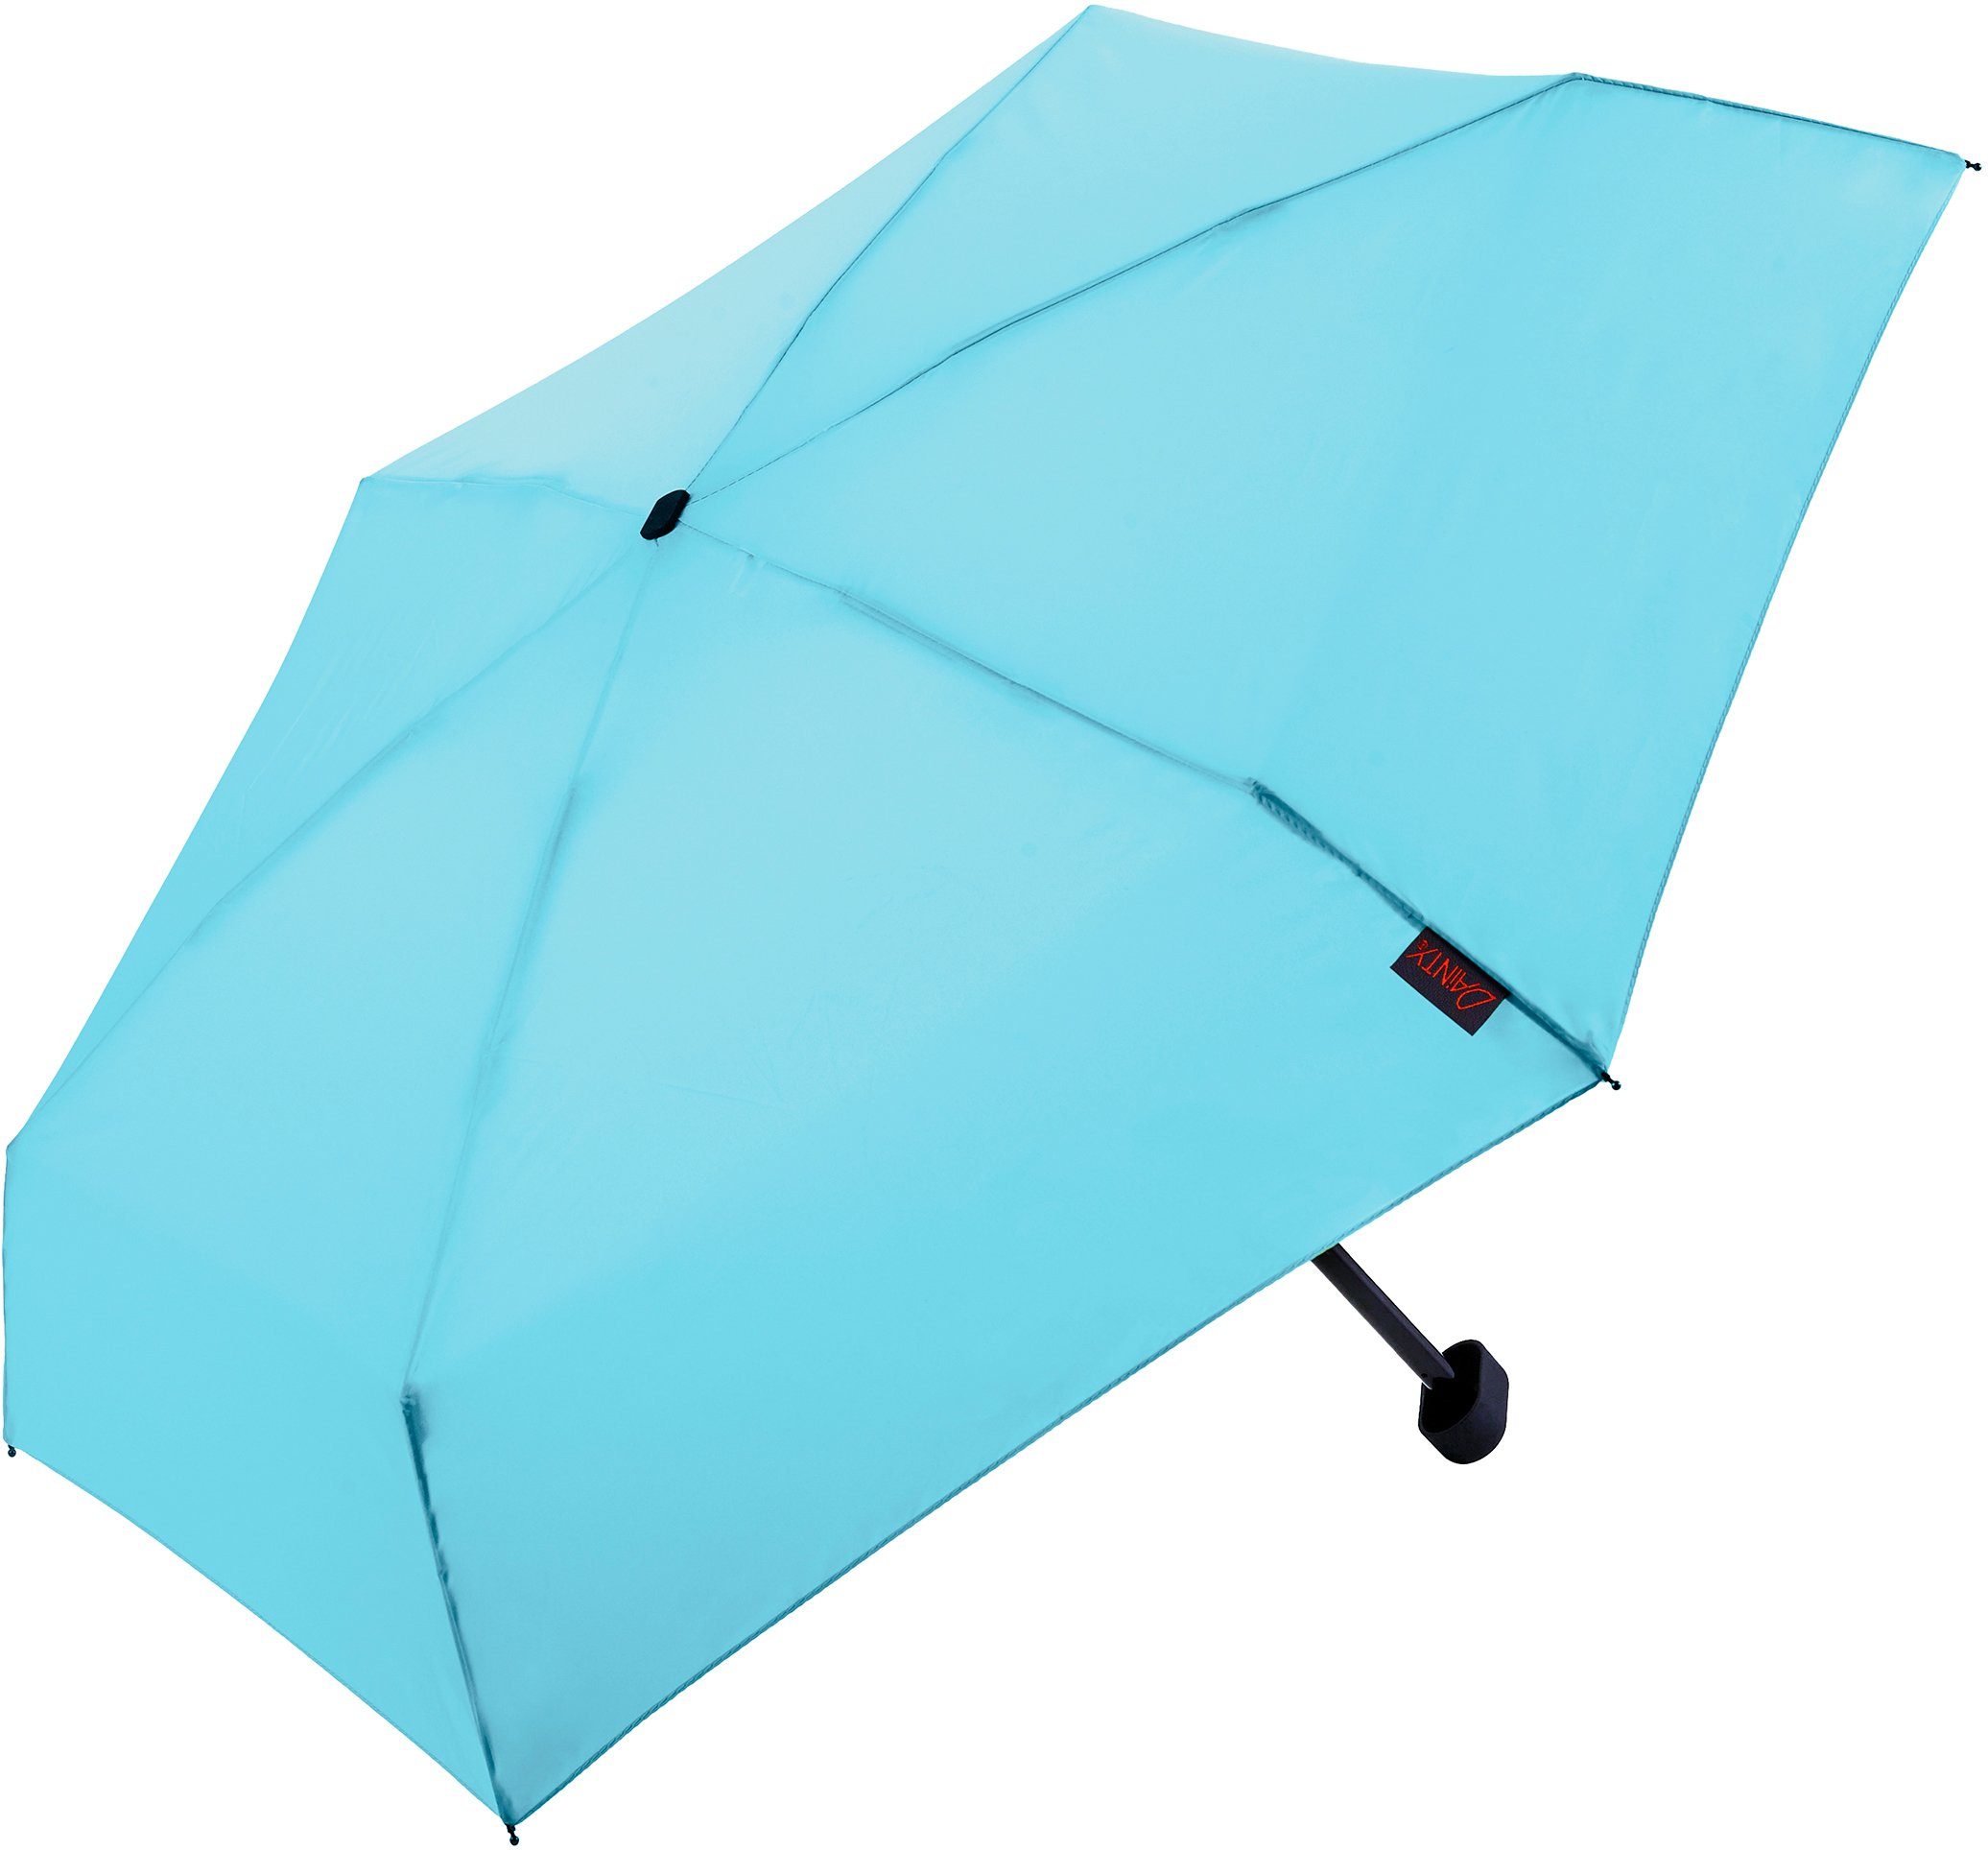 Taschenregenschirm EuroSCHIRM® kurz extra Dainty, flach hellblau, und